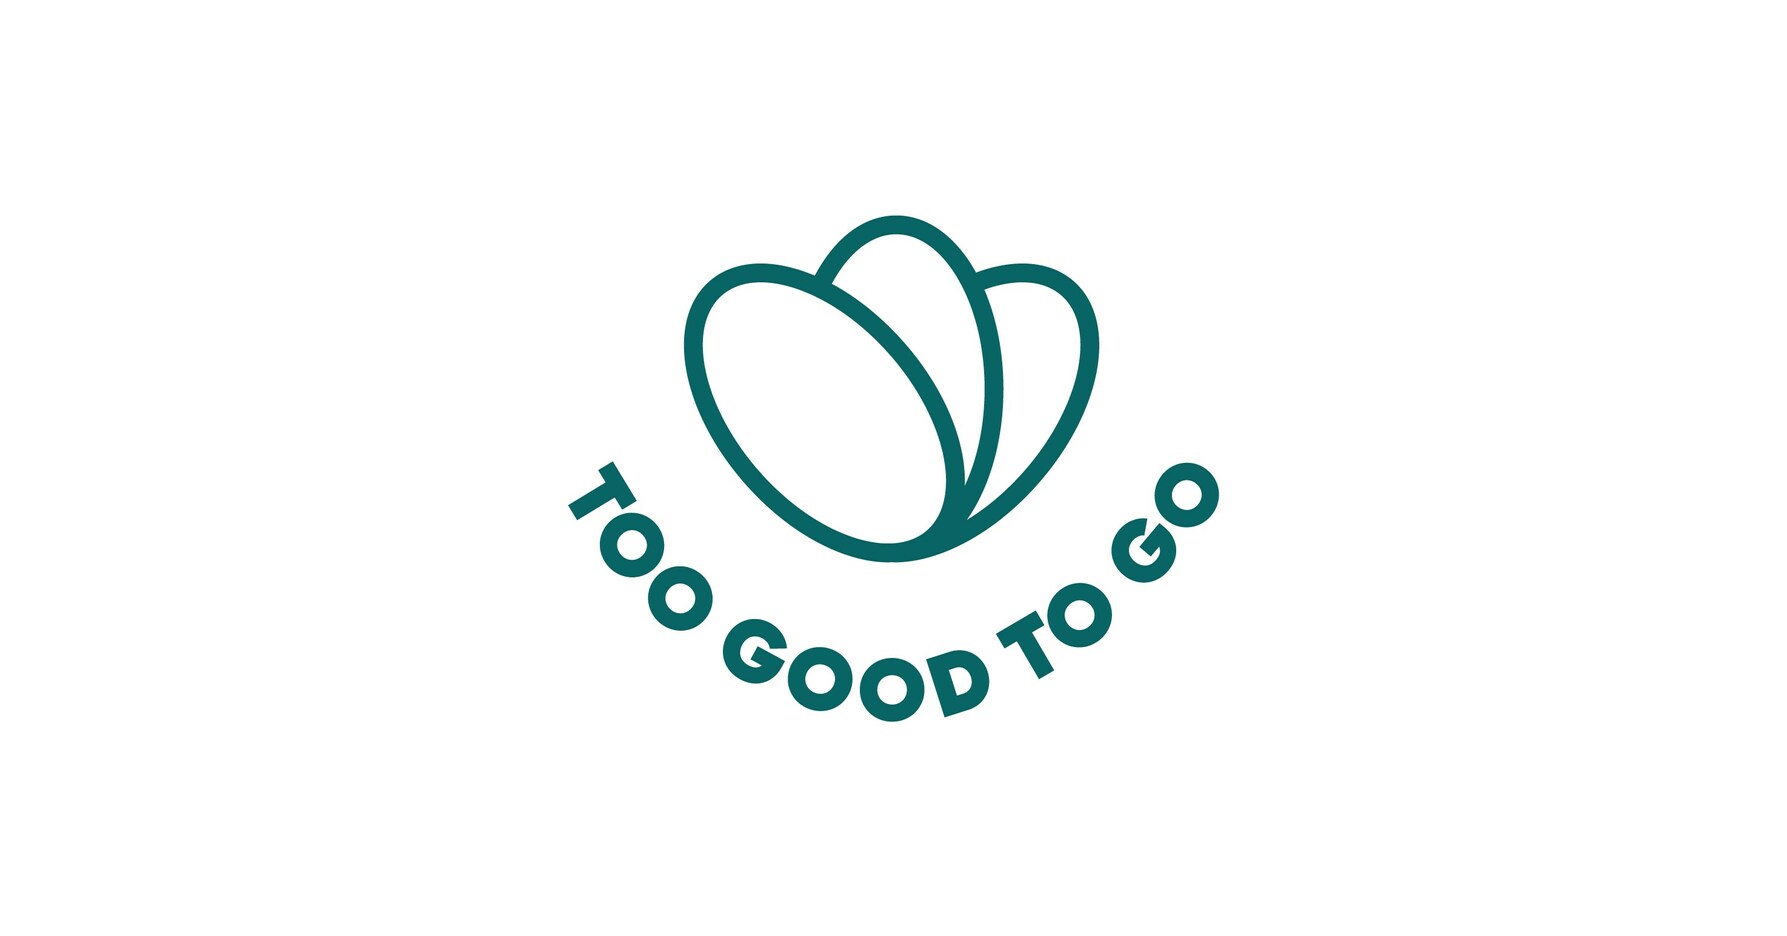 https://mma.prnewswire.com/media/2078397/Too_Good_To_Go_Logo.jpg?p=facebook